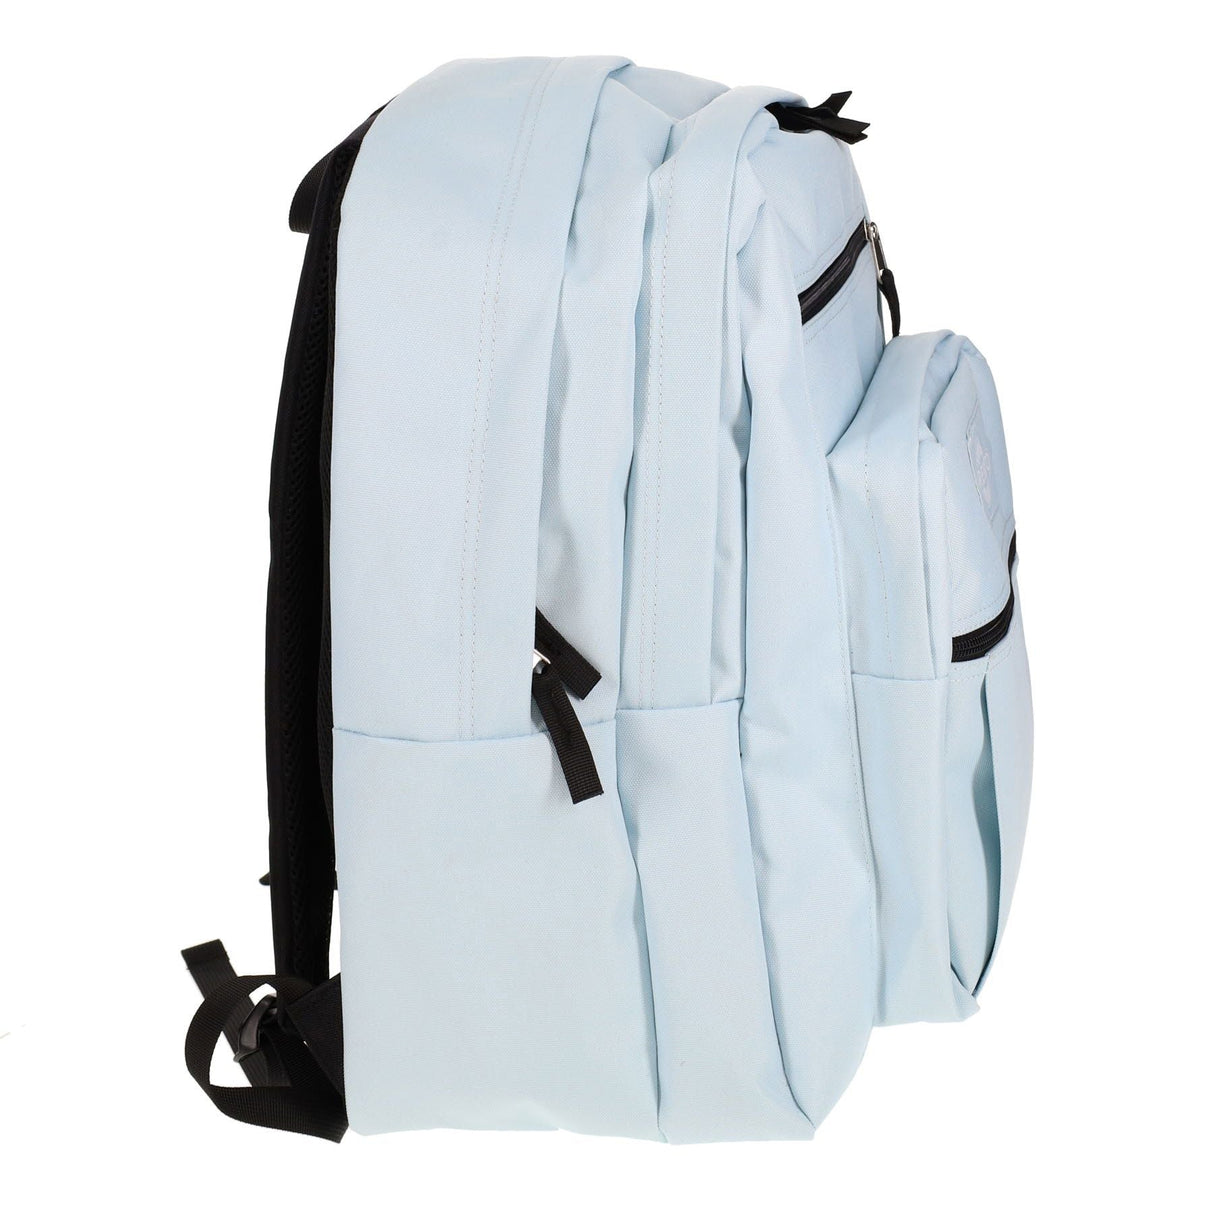 Premto 34L Backpack - Cornflower Blue-Backpacks-Premto|StationeryShop.co.uk